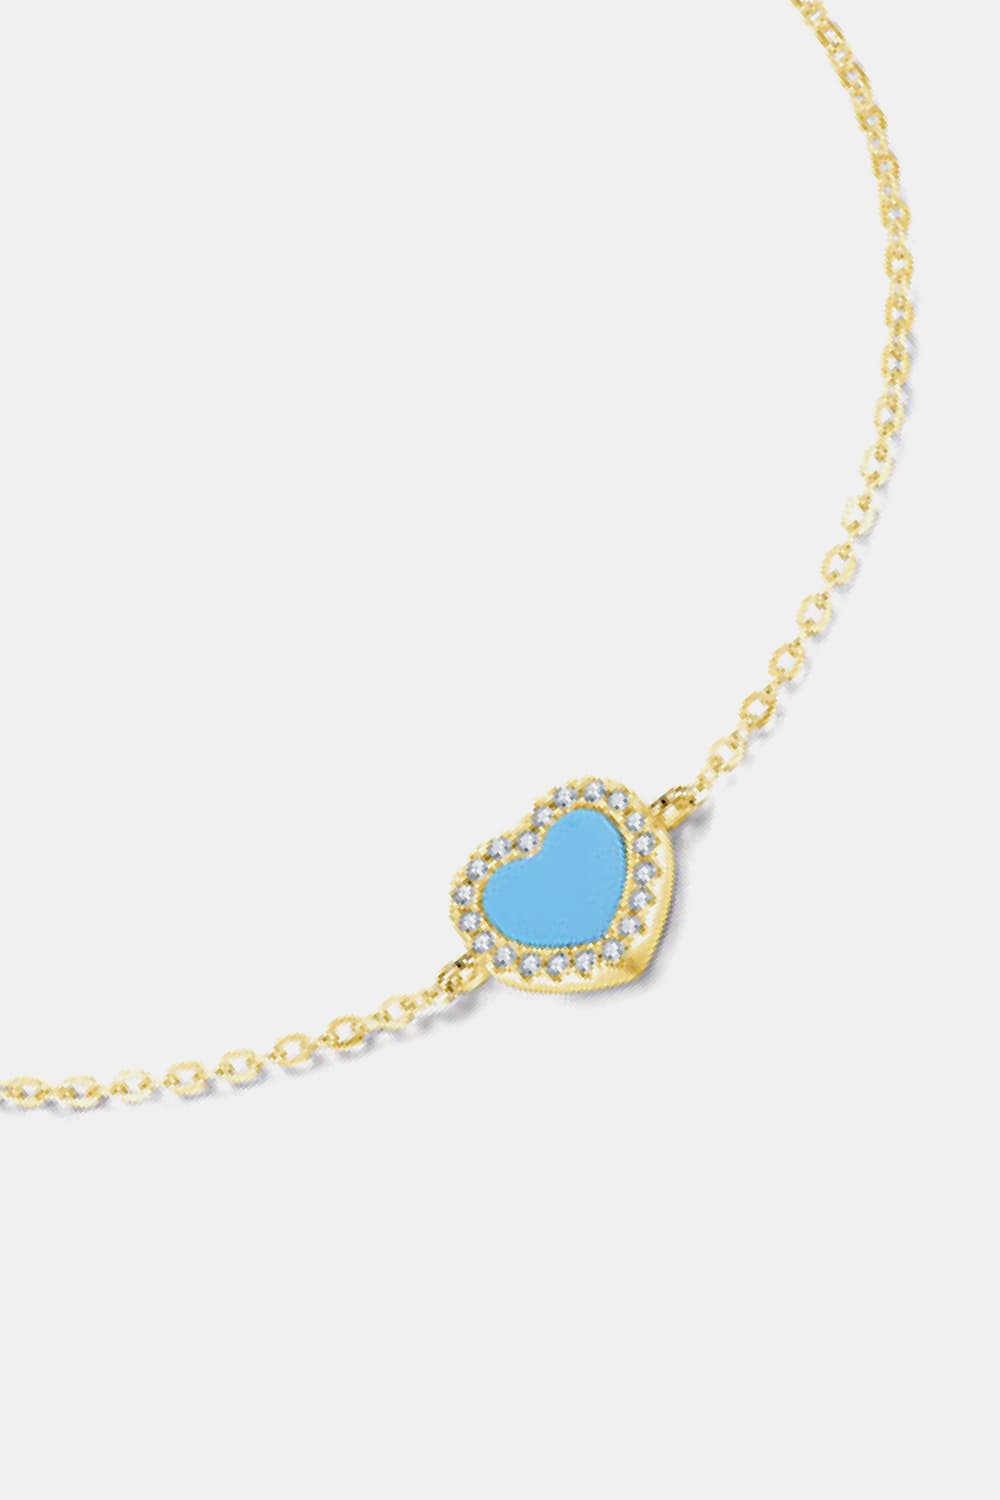 925 Sterling Silver Heart Shape Spring Ring Closure Bracelets - Women’s Jewelry - Bracelets - 3 - 2024